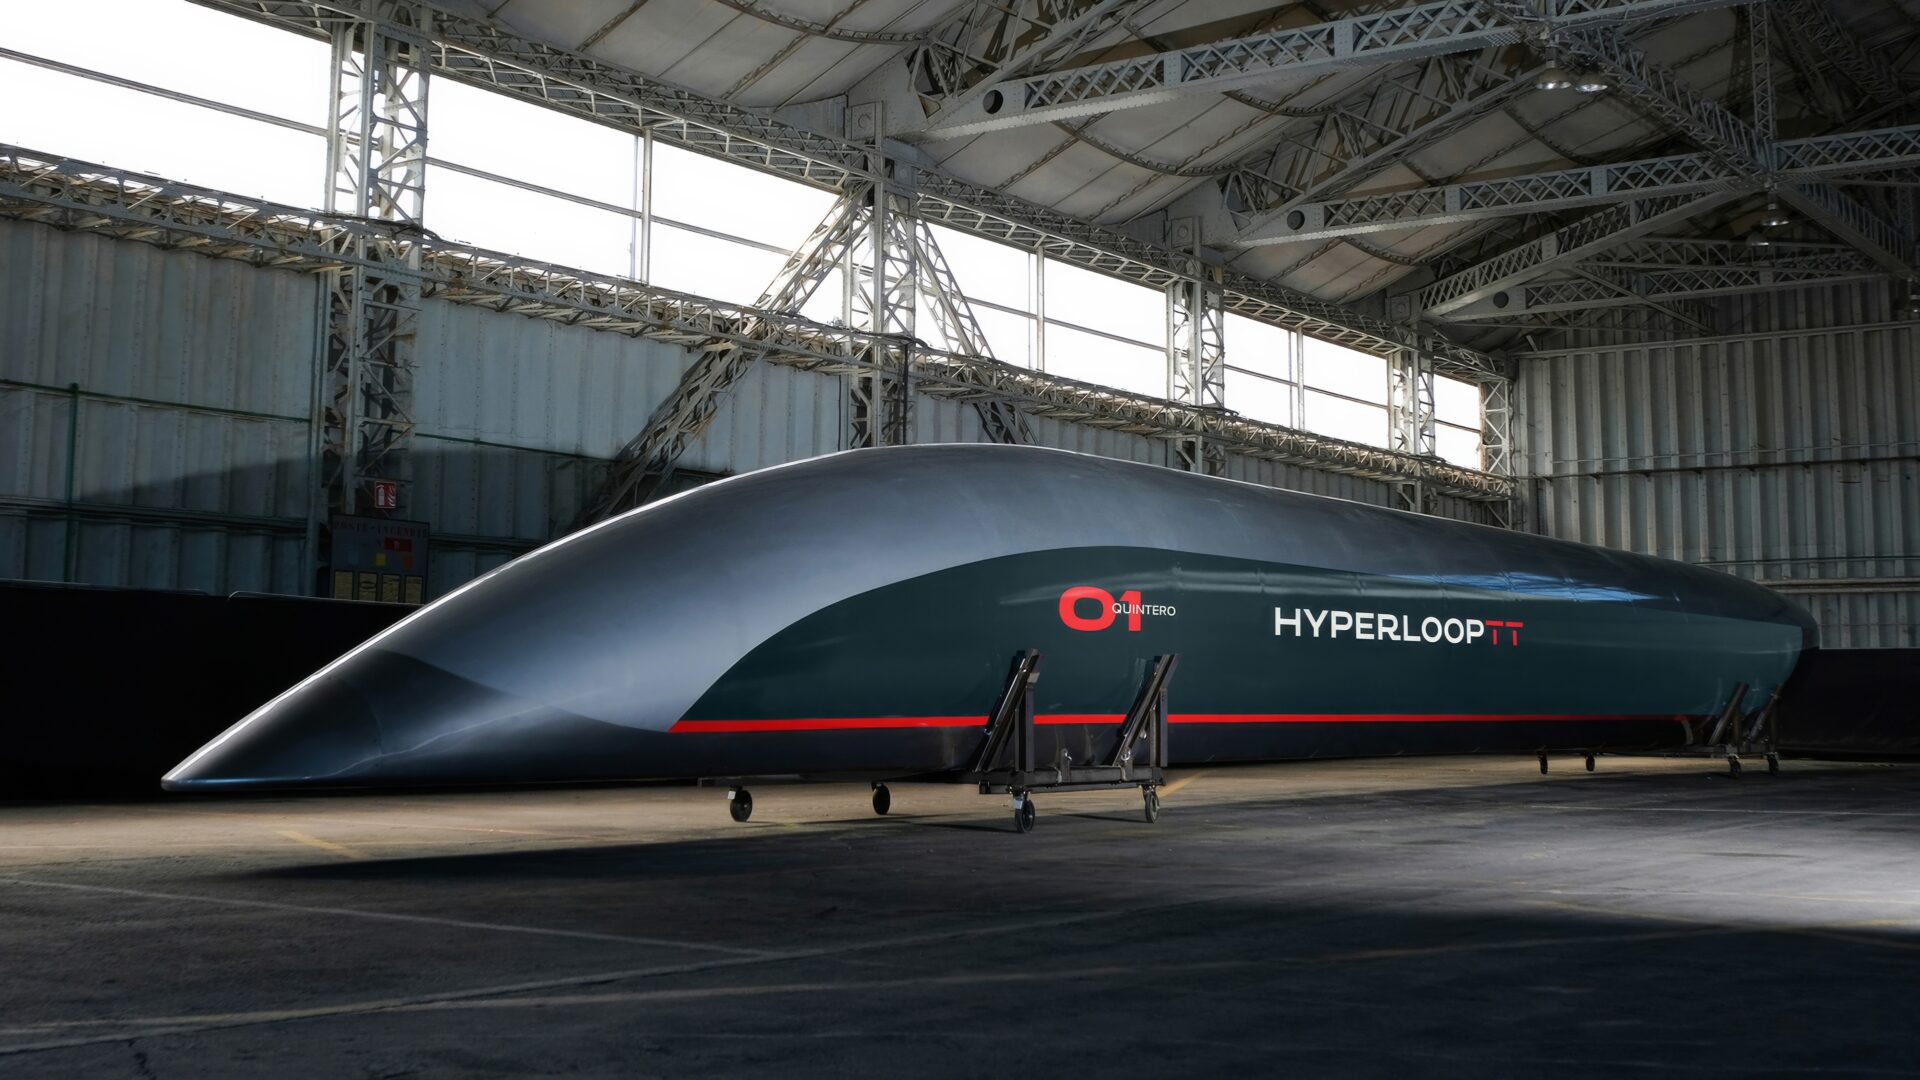 Italia kan få verdens første kommersielle hyperloop